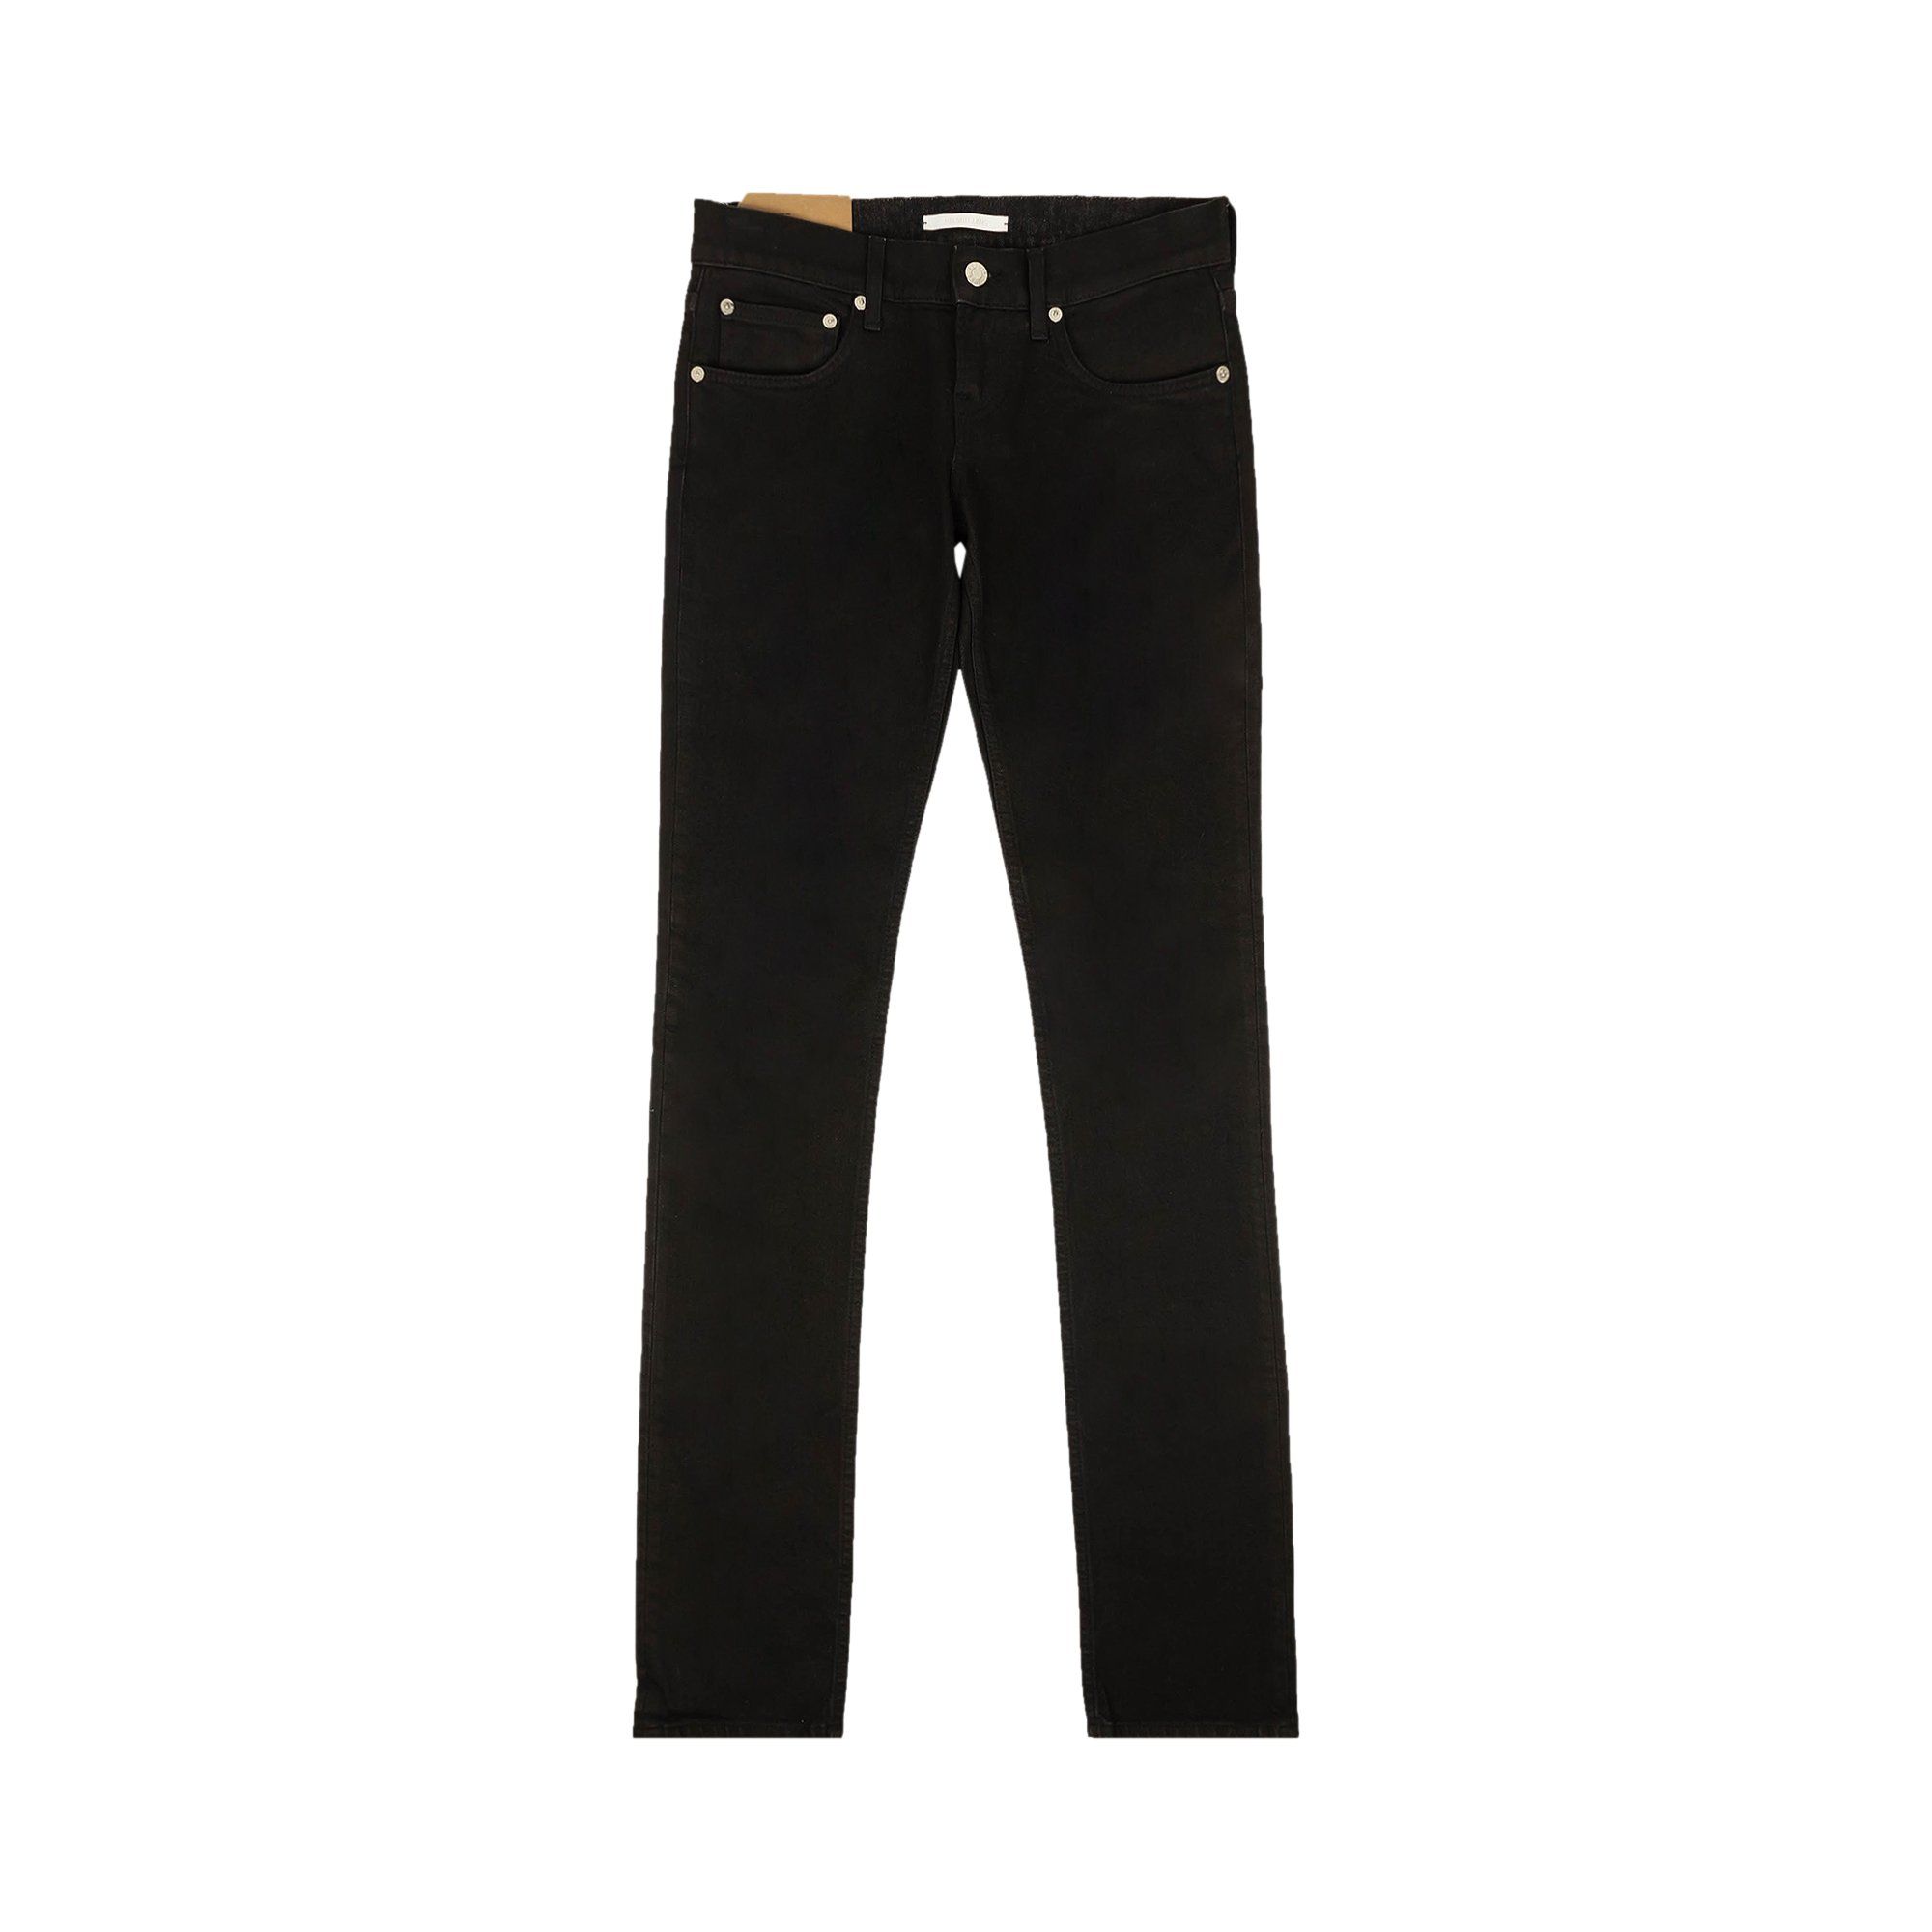 джинсы helmut lang размер 44 46 черный Джинсы-сигареты Helmut Lang Femme Lo, черные